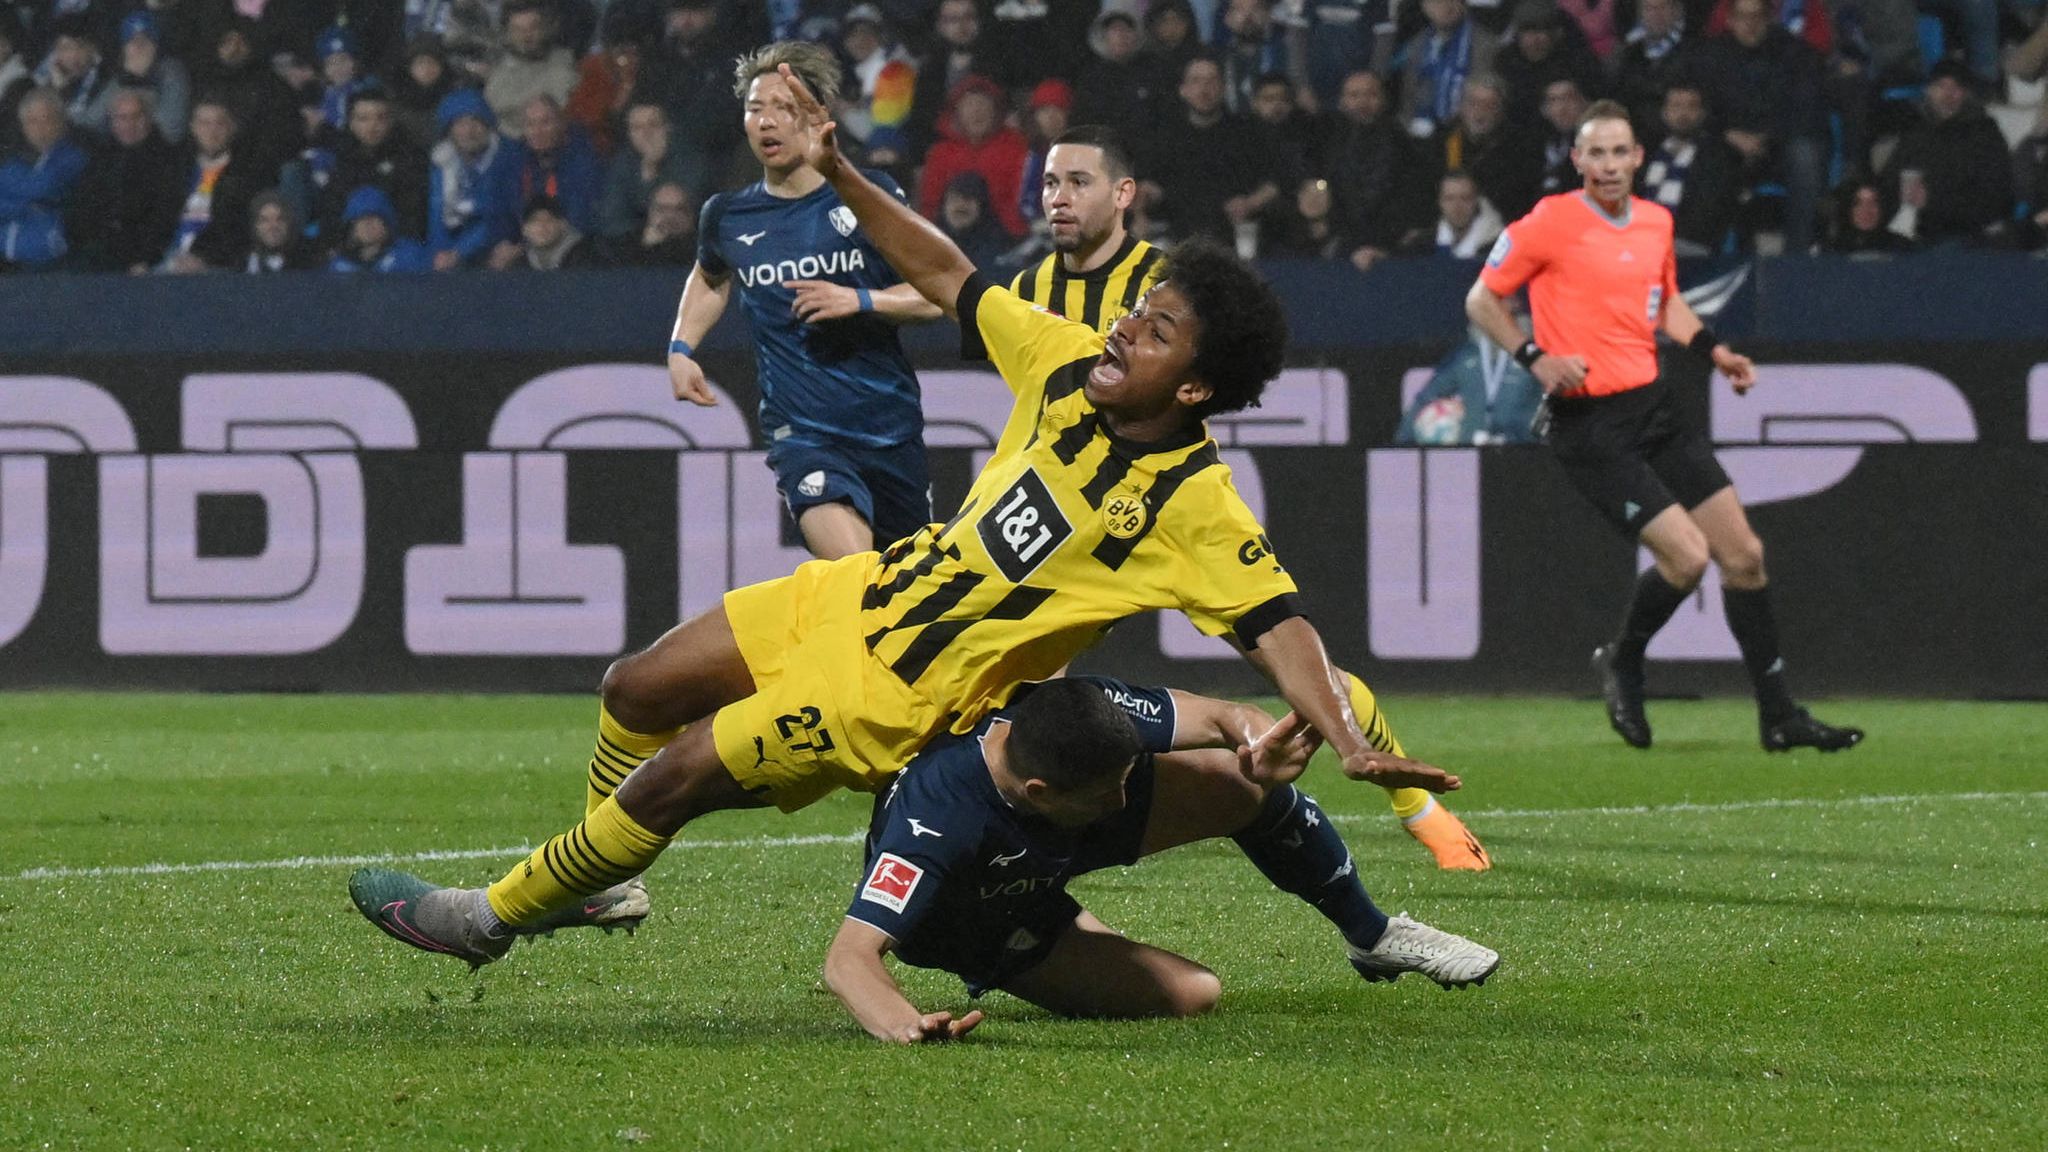 Borussia Dortmund Manuel Gräfe sieht Fehlentscheidung und kritisiert DFB STERN.de